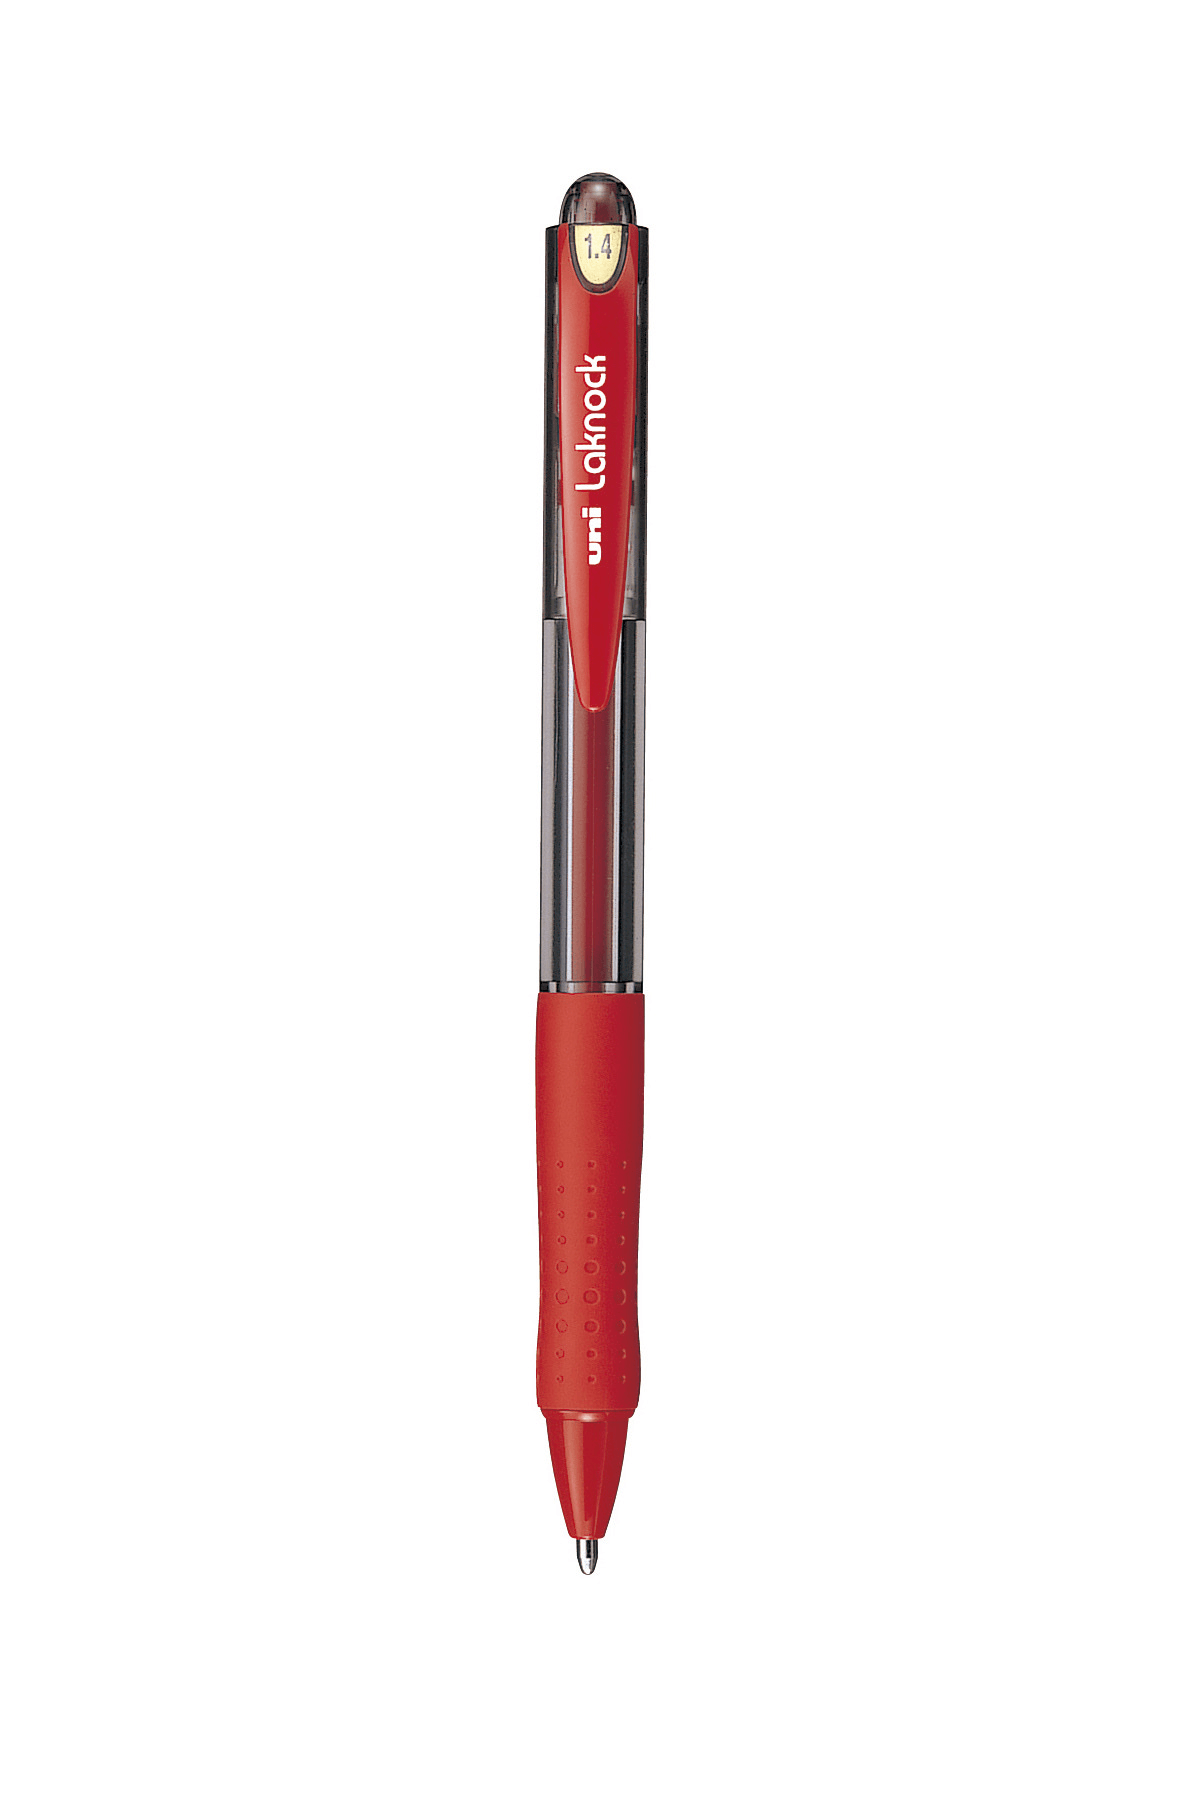 ปากกาลูกลื่นแบบกด uni Laknock SN-100 สีแดง 1.4 มม.